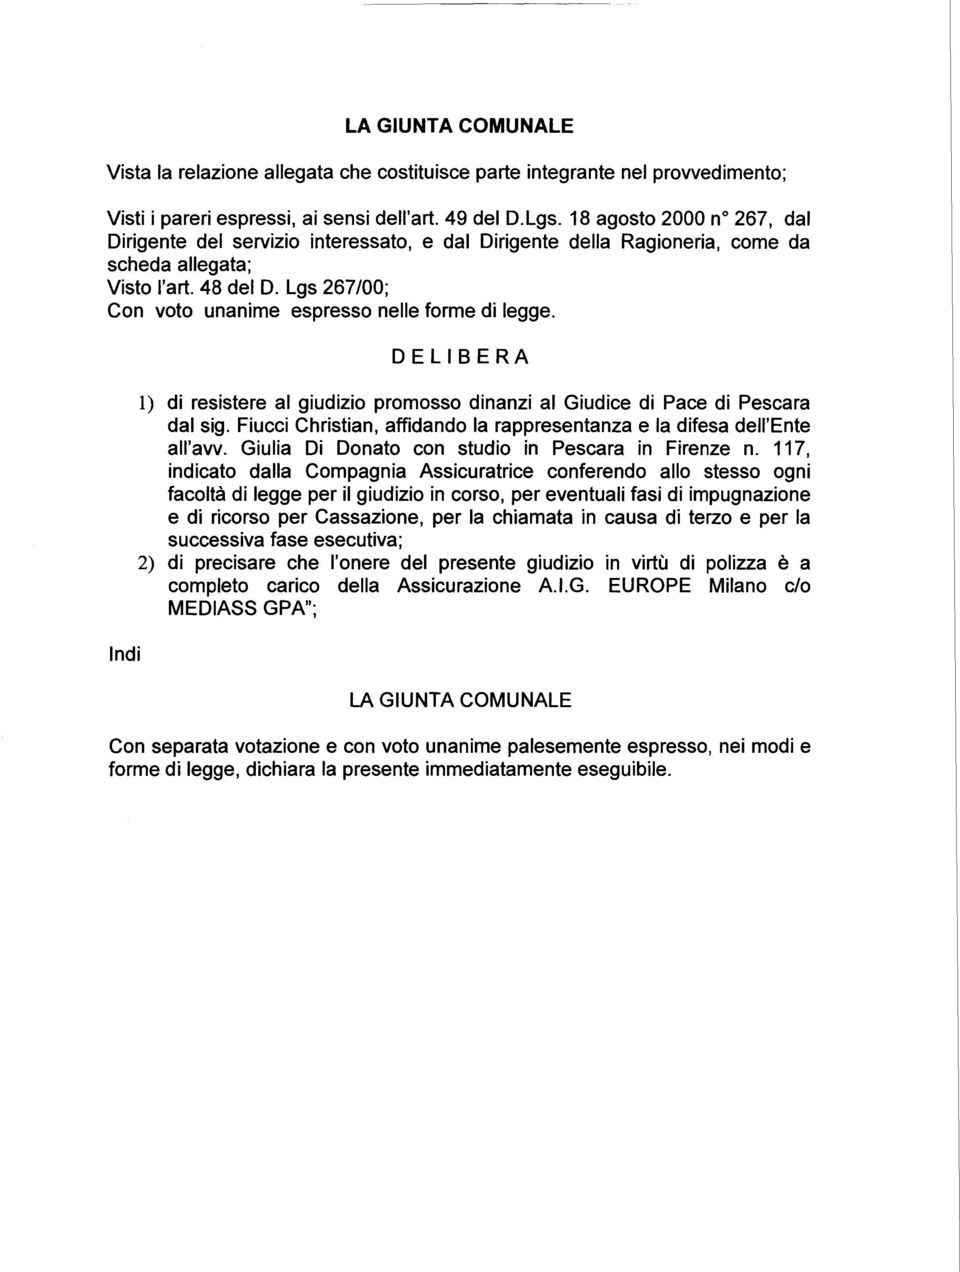 Lgs 267/00; Con voto unanime espresso nelle forme di legge. Indi DELIBERA l) di resistere al giudizio promosso dinanzi al Giudice di Pace di Pescara dal sig.